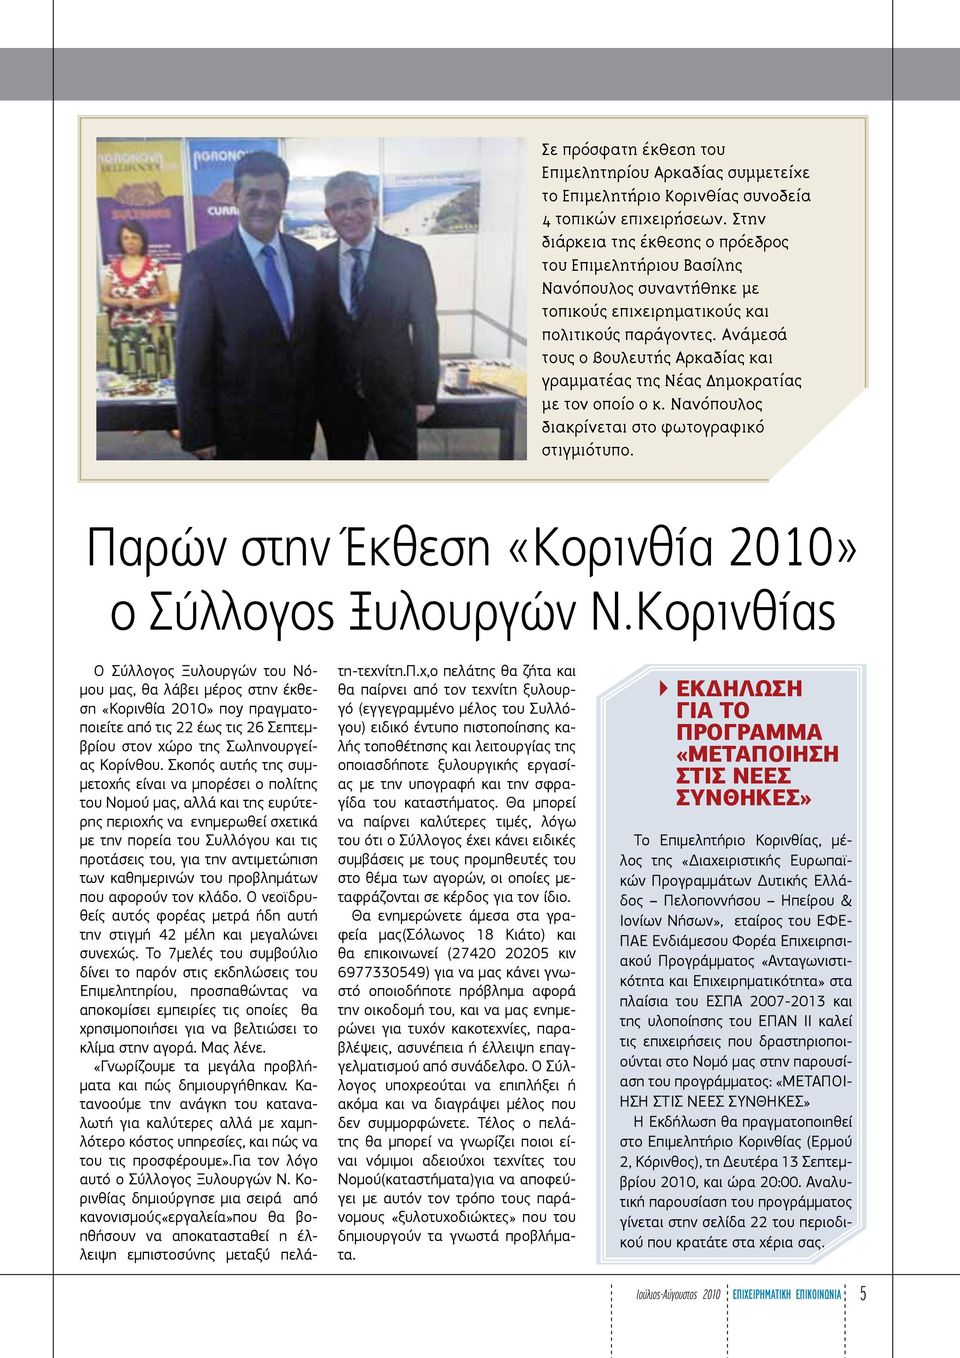 Ανάμεσά τους ο βουλευτής Αρκαδίας και γραμματέας της Νέας Δημοκρατίας με τον οποίο ο κ. Νανόπουλος διακρίνεται στο φωτογραφικό στιγμιότυπο. Παρών στην Έκθεση «Κορινθία 2010» ο Σύλλογος Ξυλουργών Ν.